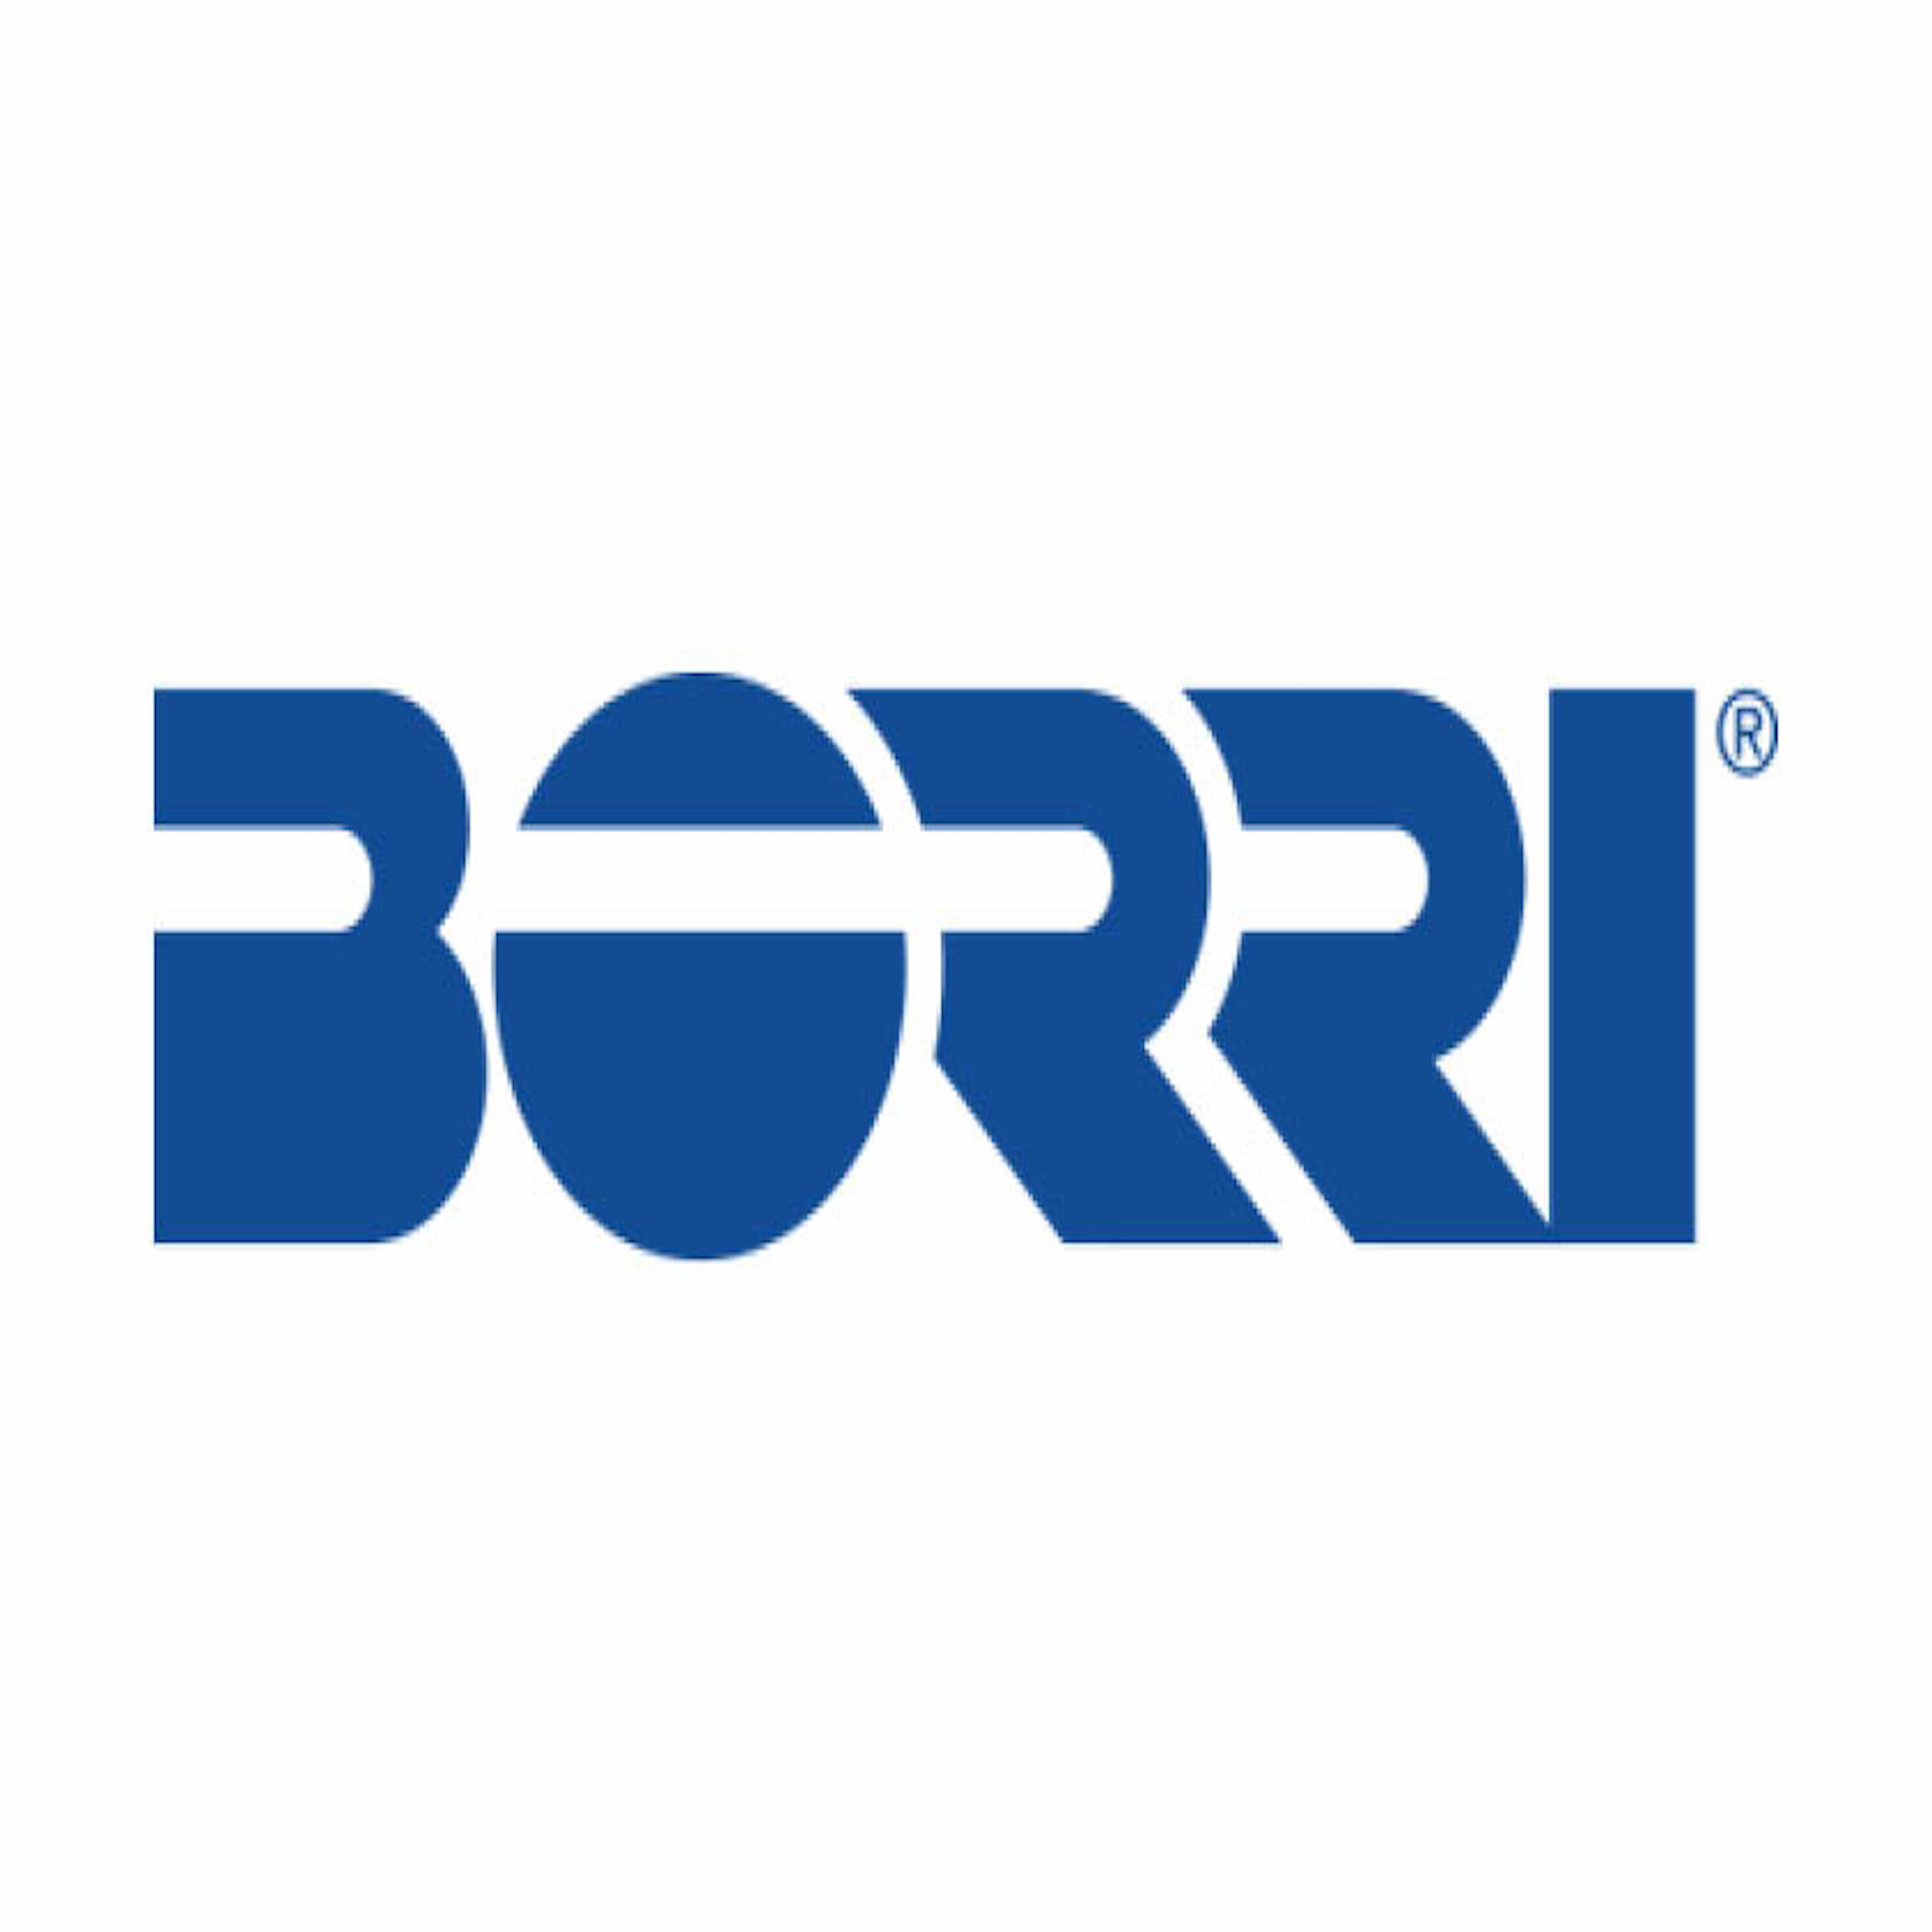 legrand-logo-Borri